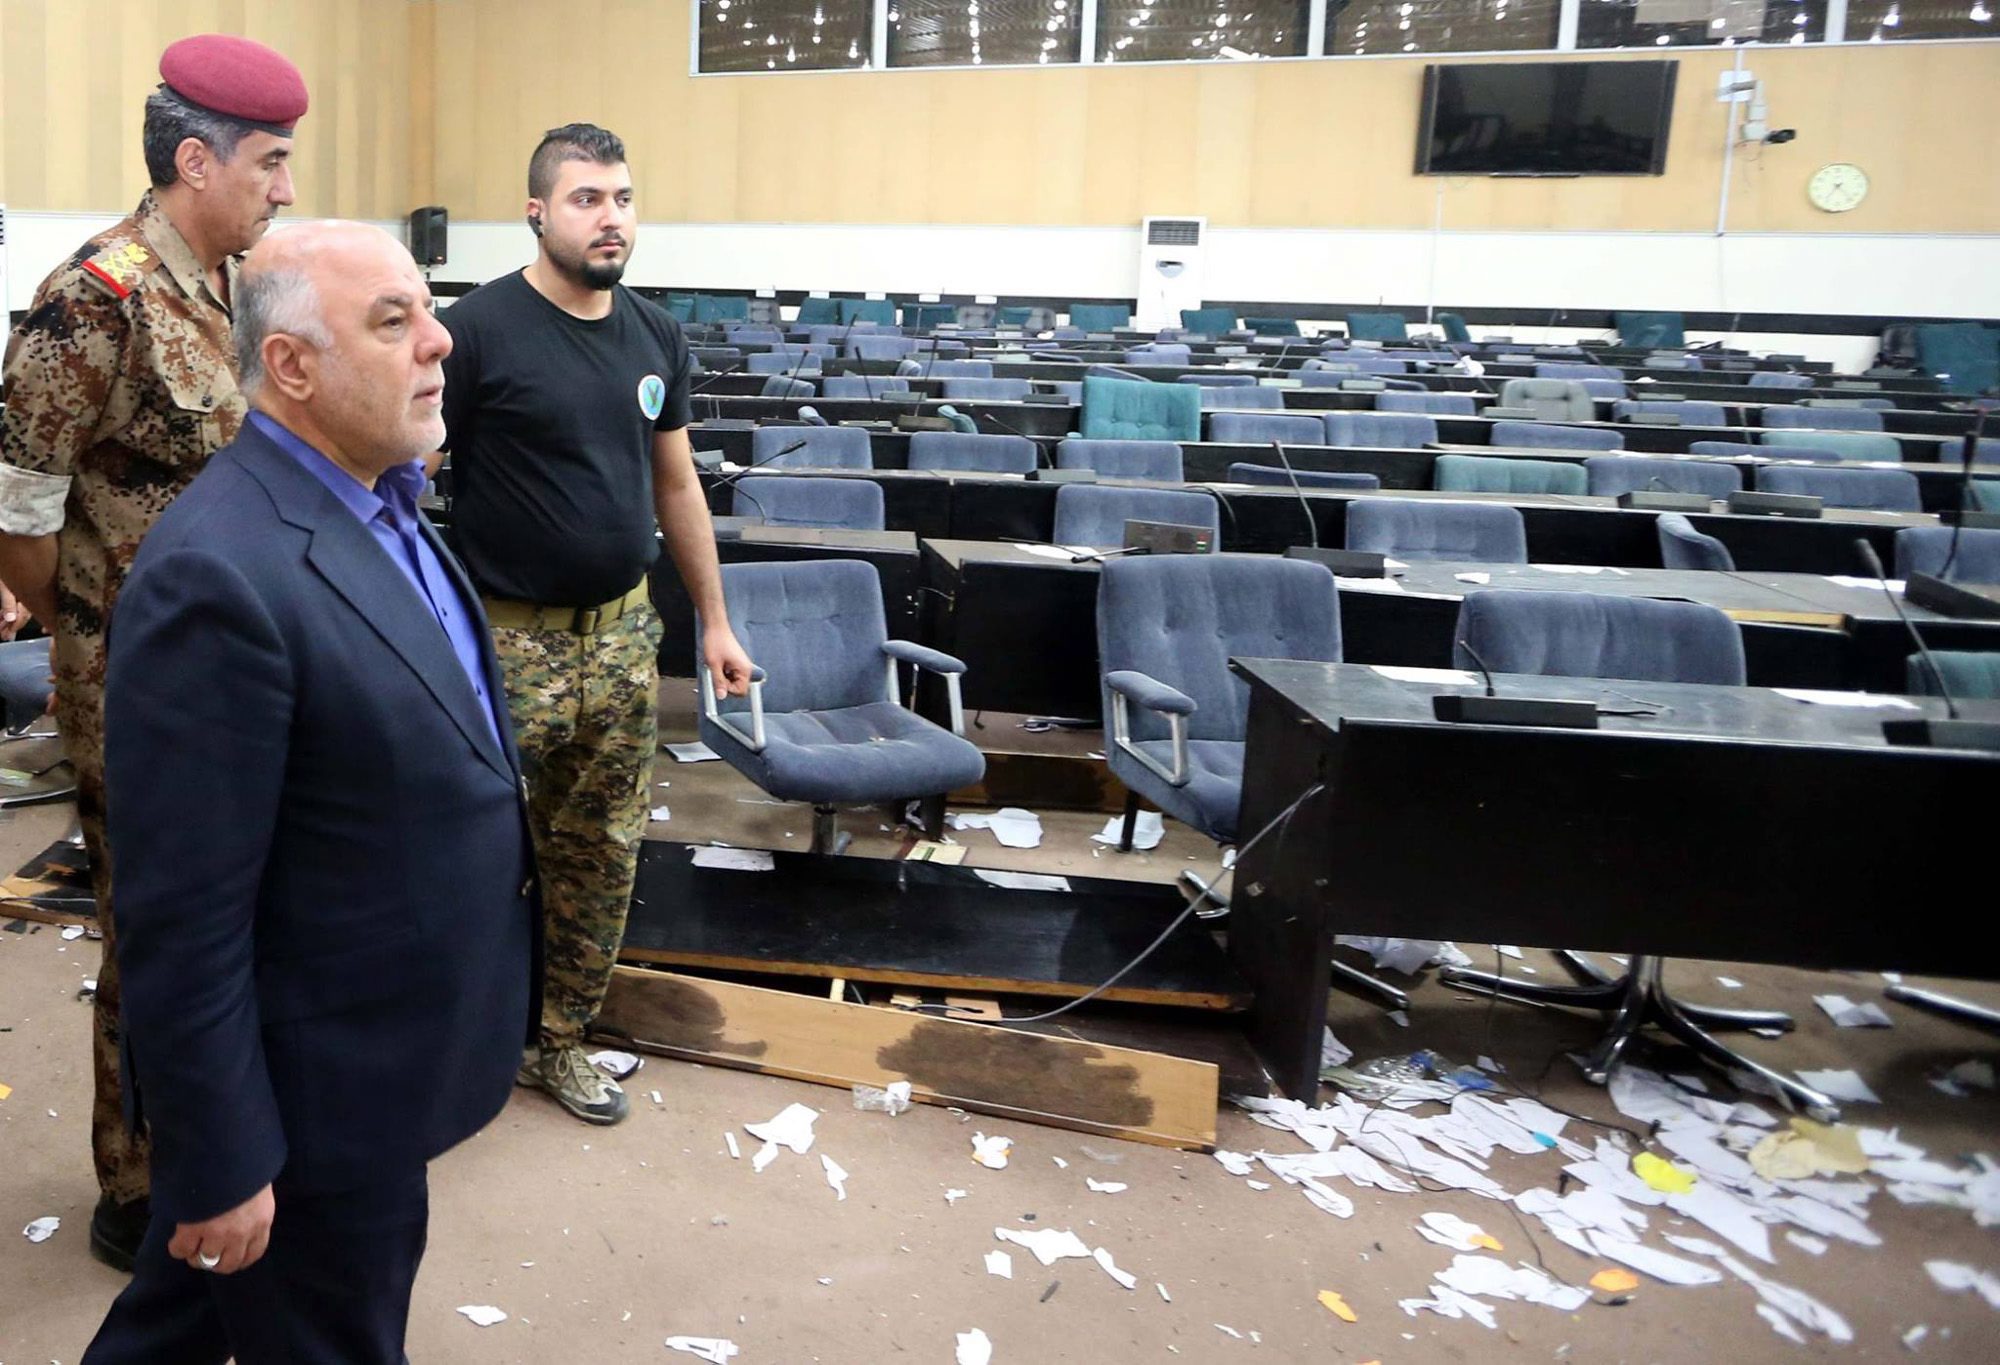 Ιράκ: Τη σύλληψη όσων εισέβαλαν στο κοινοβούλιο διέταξε ο πρωθυπουργός